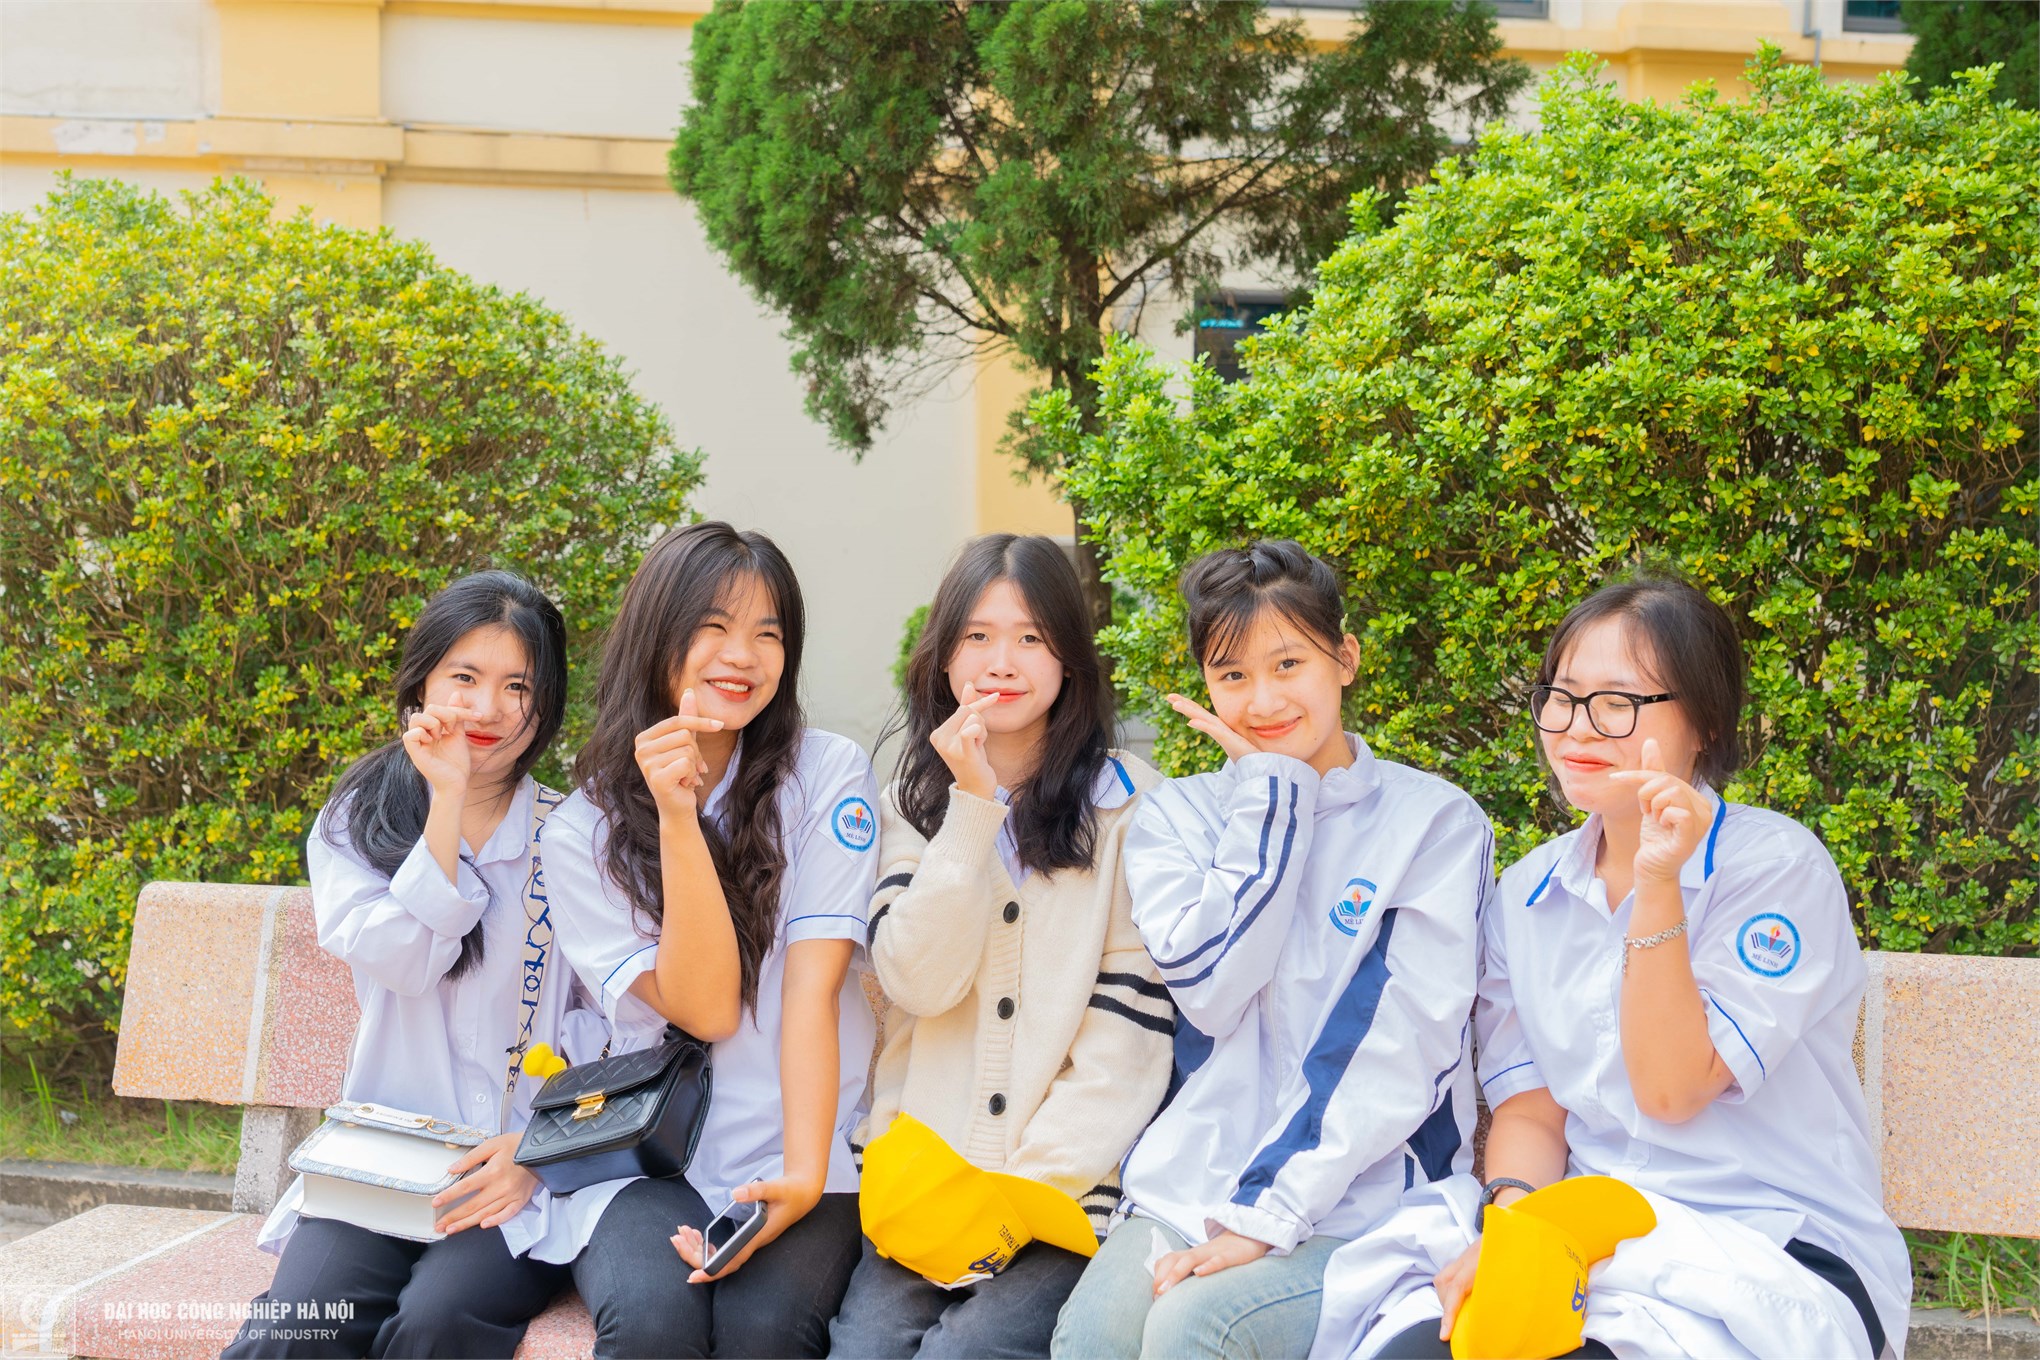 Đại học Công nghiệp Hà Nội đón gần 500 thầy cô, phụ huynh và học sinh trường THPT Mê Linh, tỉnh Thái Bình